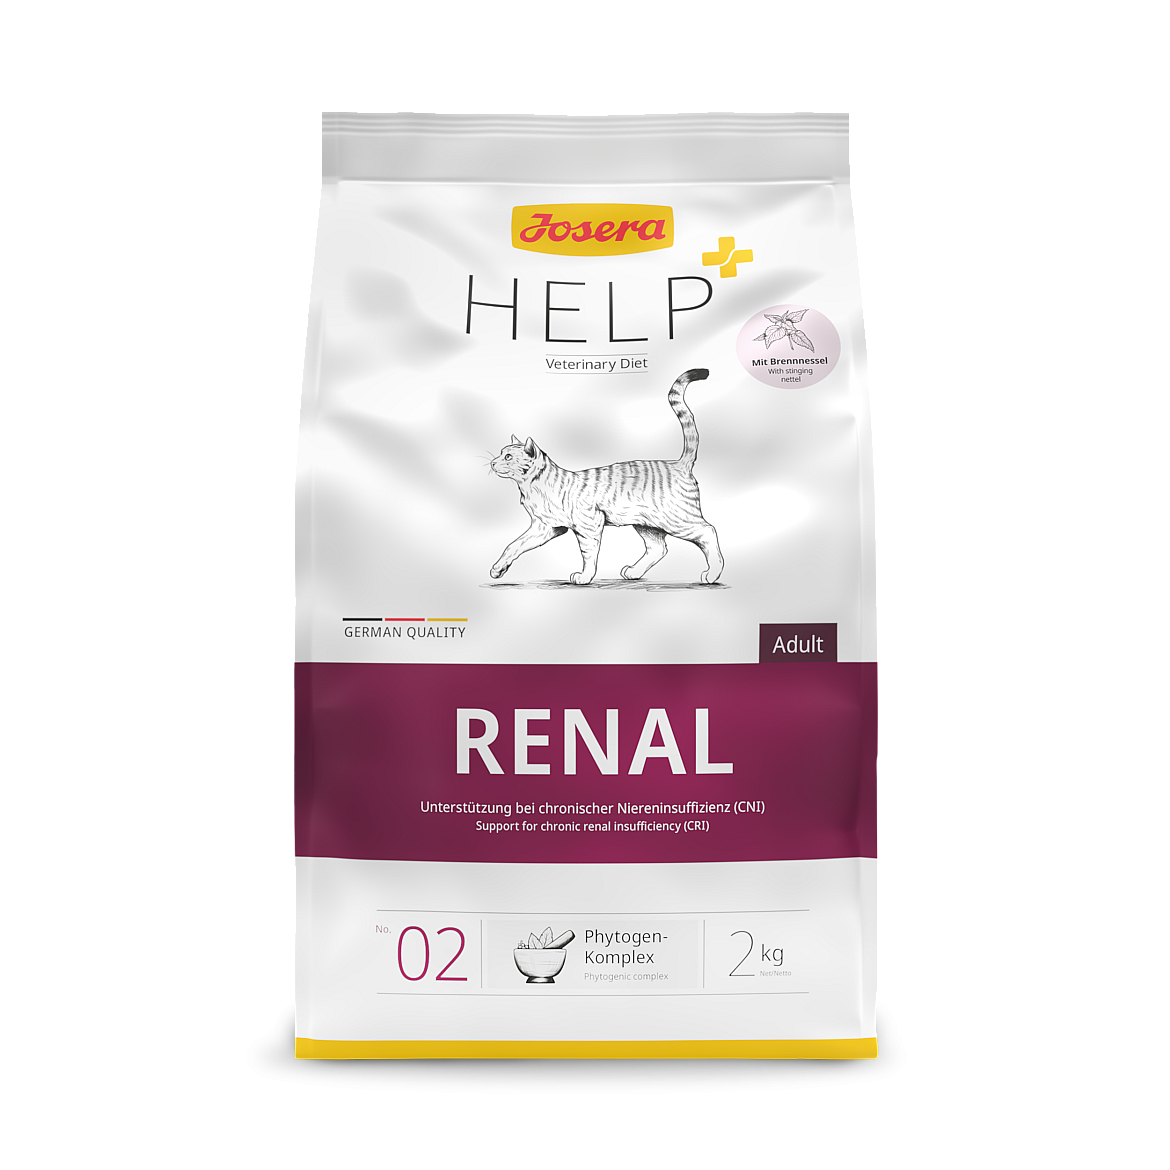 Дієтичний корм для дорослих котів для підтримки функції нирок у випадку хронічної ниркової недостатності Josera Help + Veterinary Diet Renal Cat з домашньою птицею, 400 г